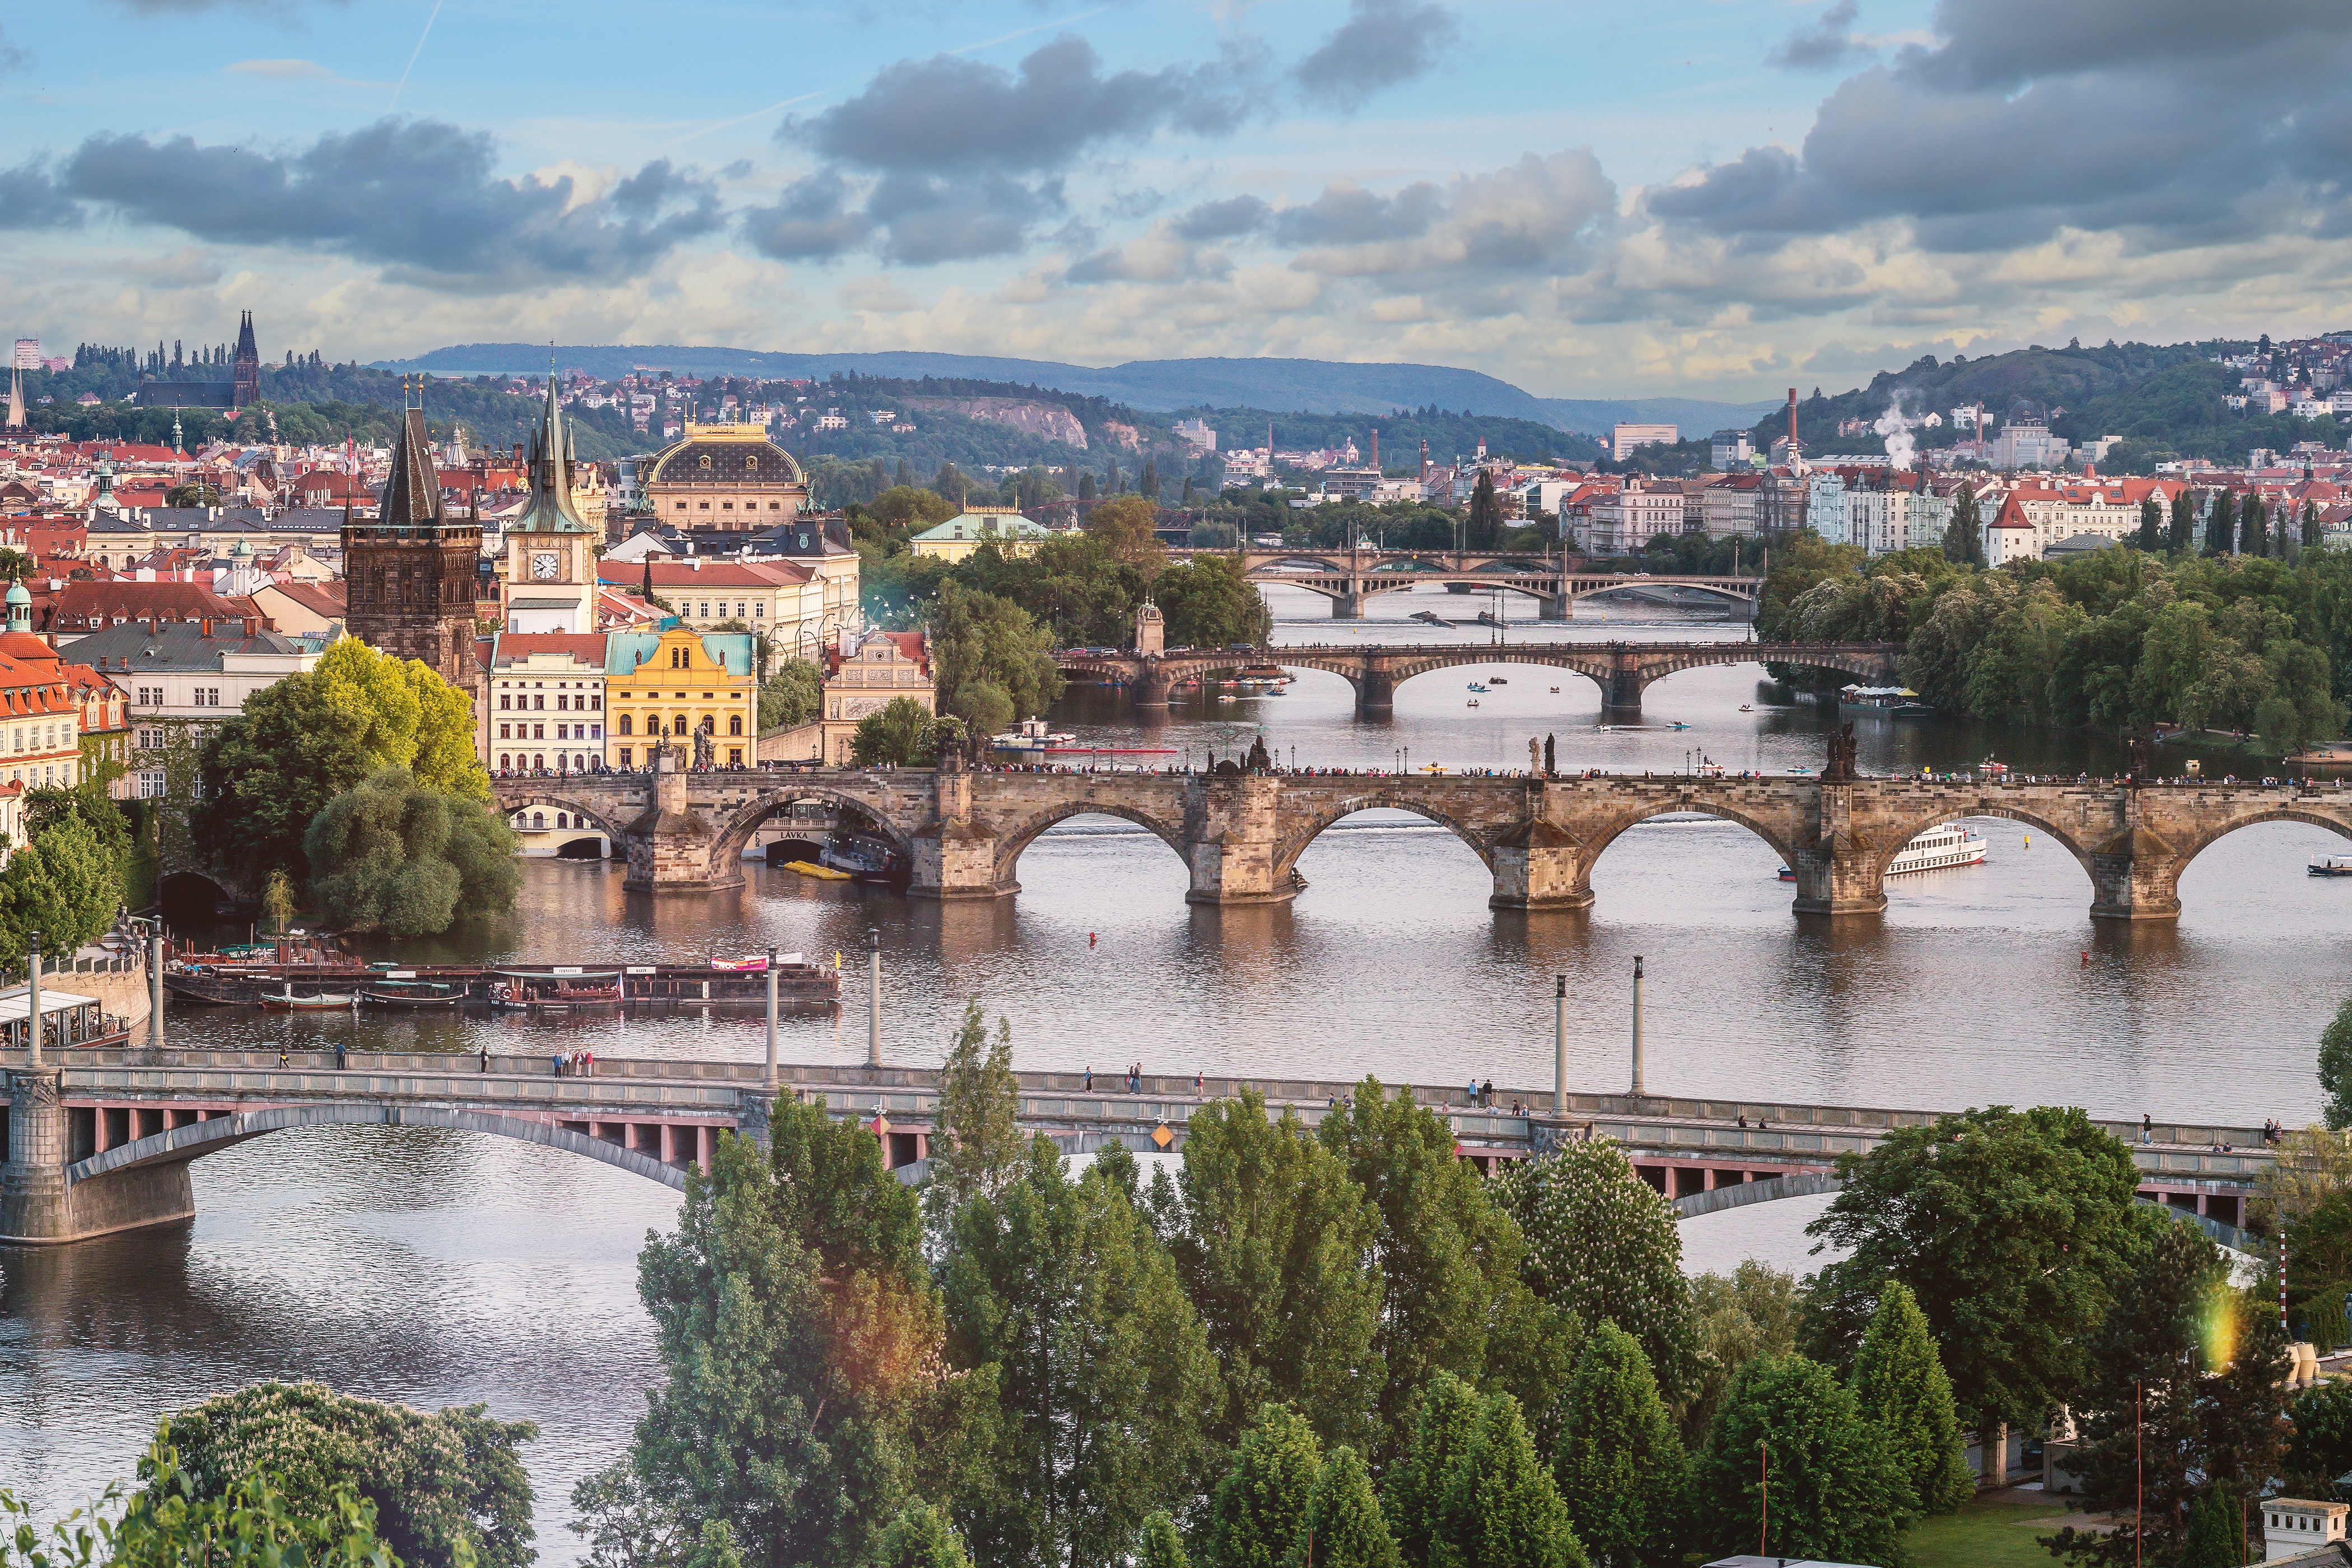 City of Prague, Czech Republic